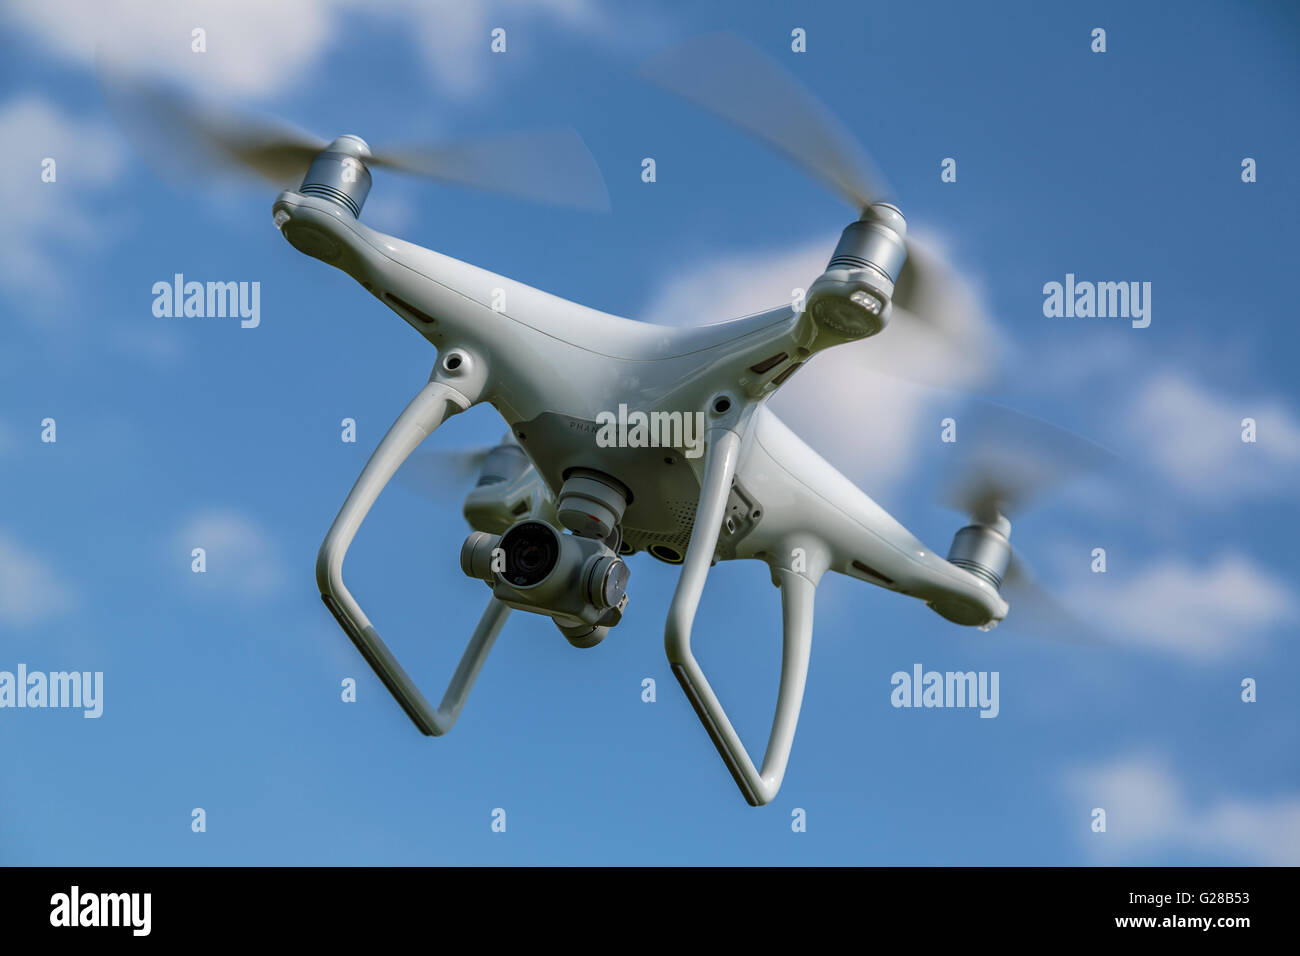 Gros plan d'un drone / quadcopter de loisirs stationnaire . Le drone dispose de capacités de caméra et de vidéo, Royaume-Uni Angleterre Banque D'Images